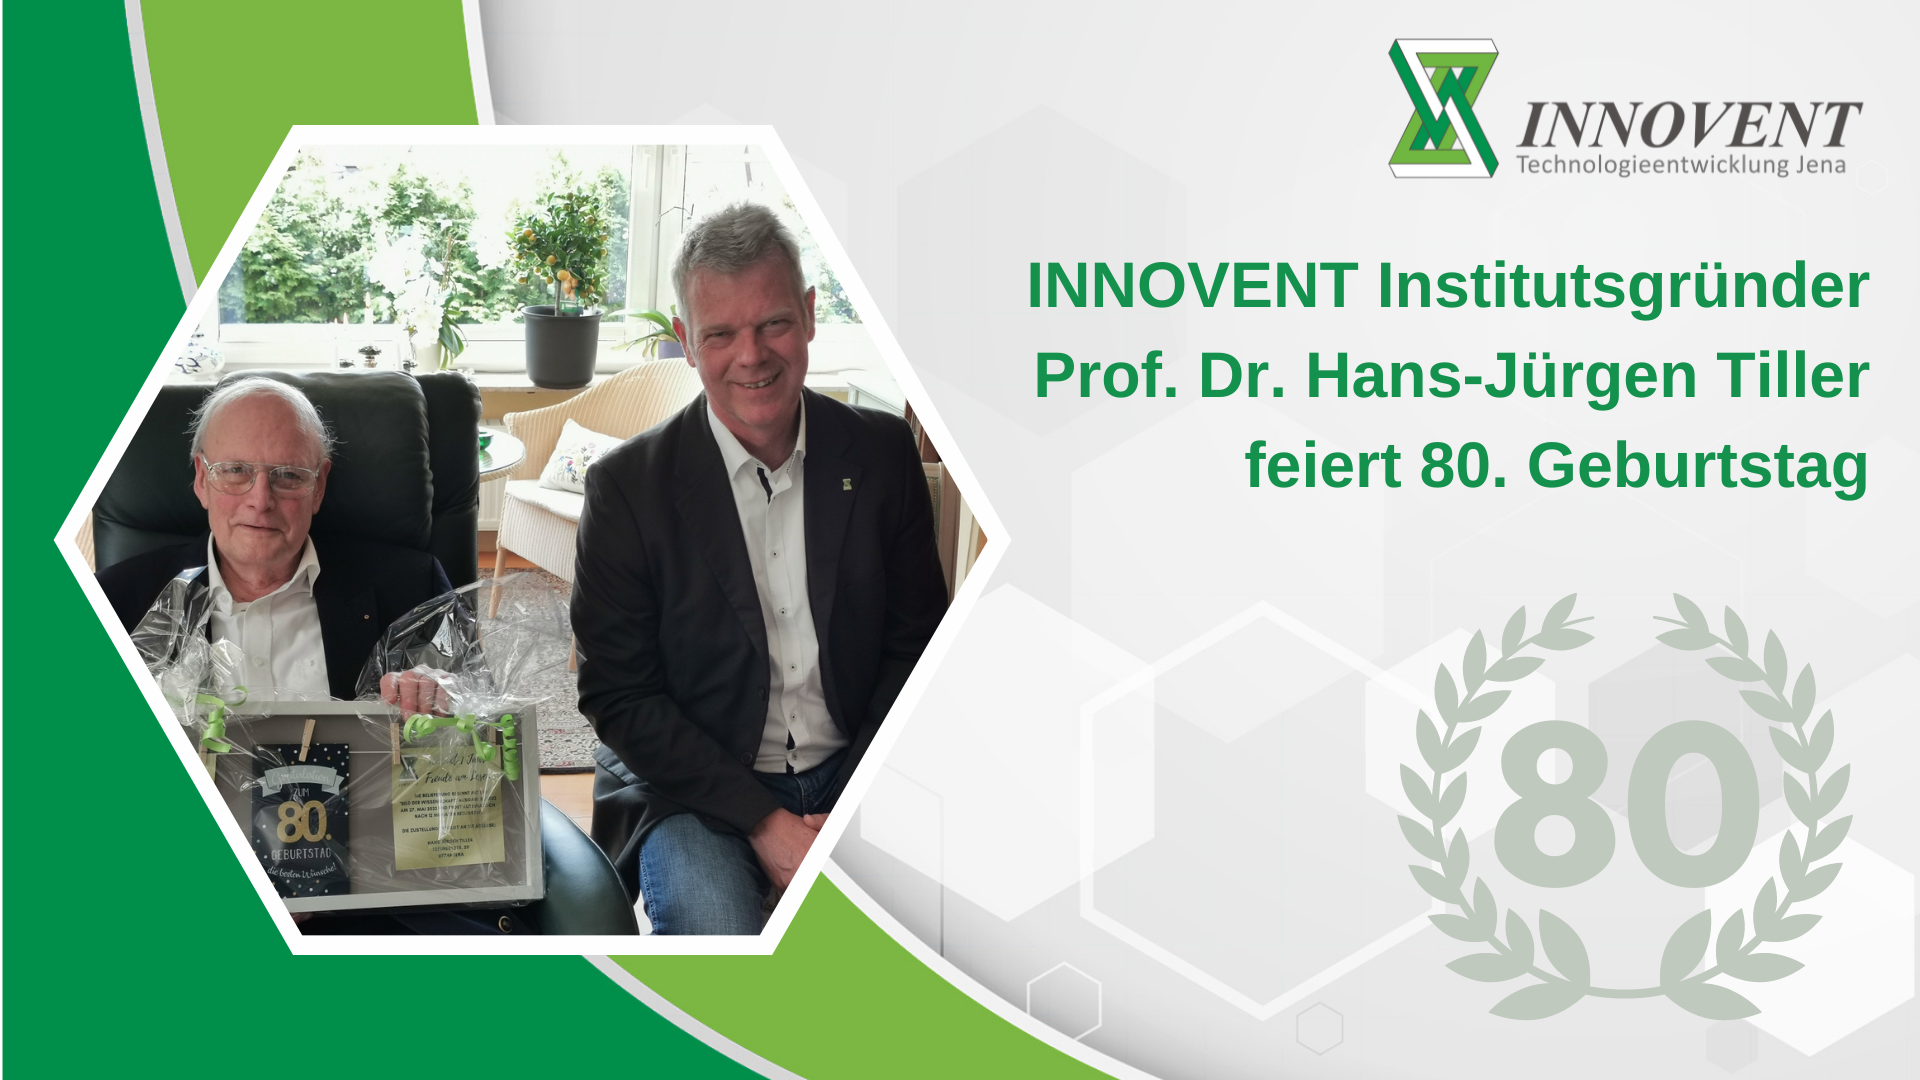 INNOVENT Institutsgründer Prof. Dr. Hans-Jürgen Tiller feiert seinen 80. Geburtstag.